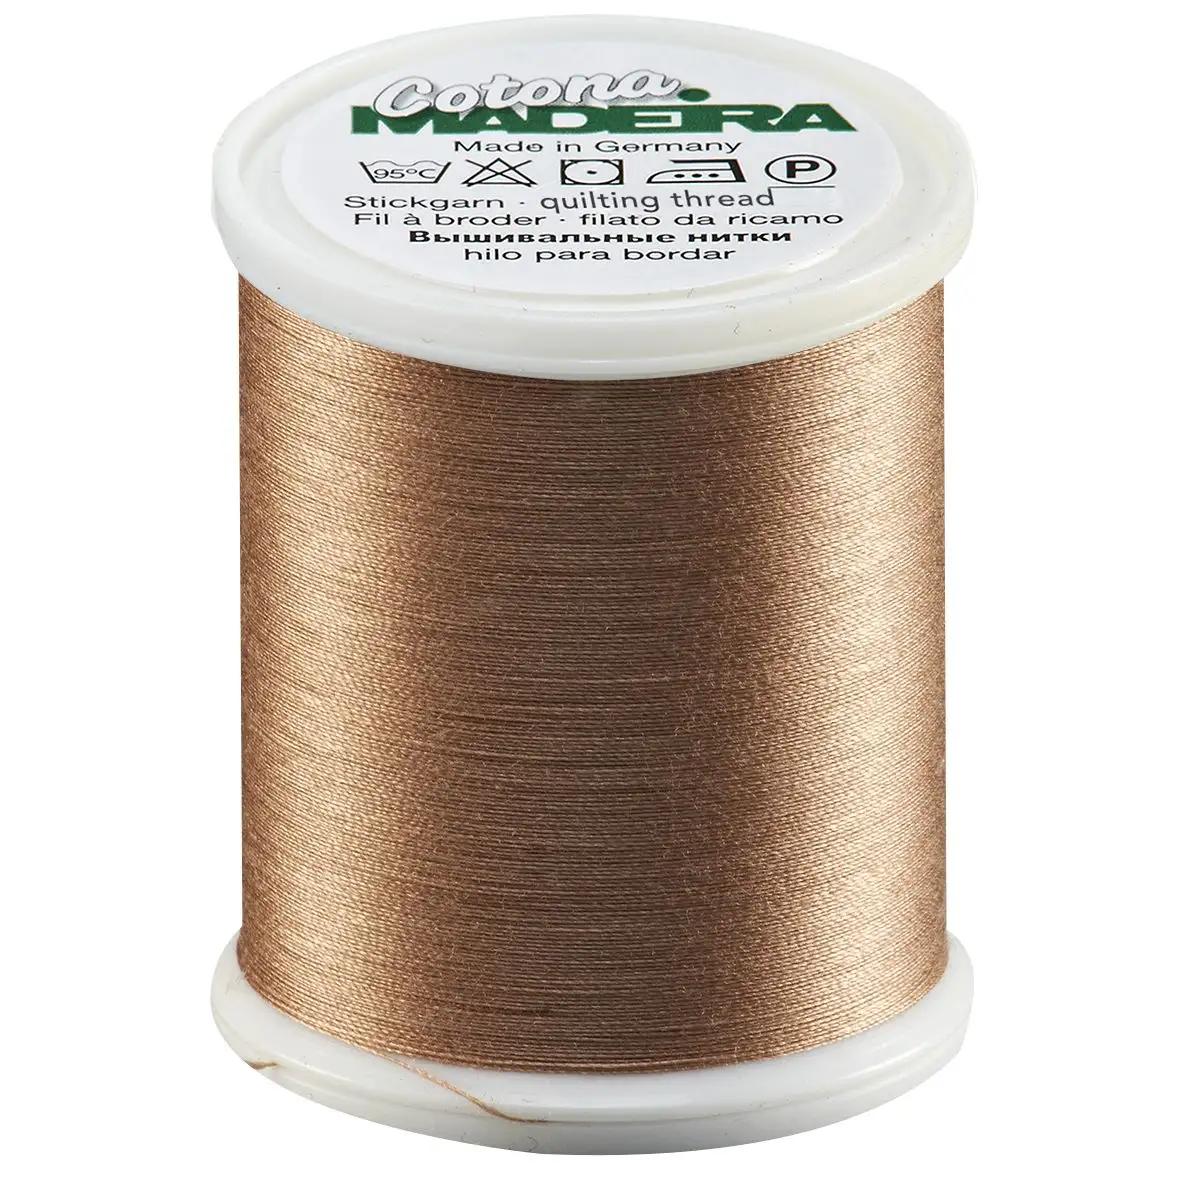 Madeira Cotona 50wt Cotton - 660 Light Brown